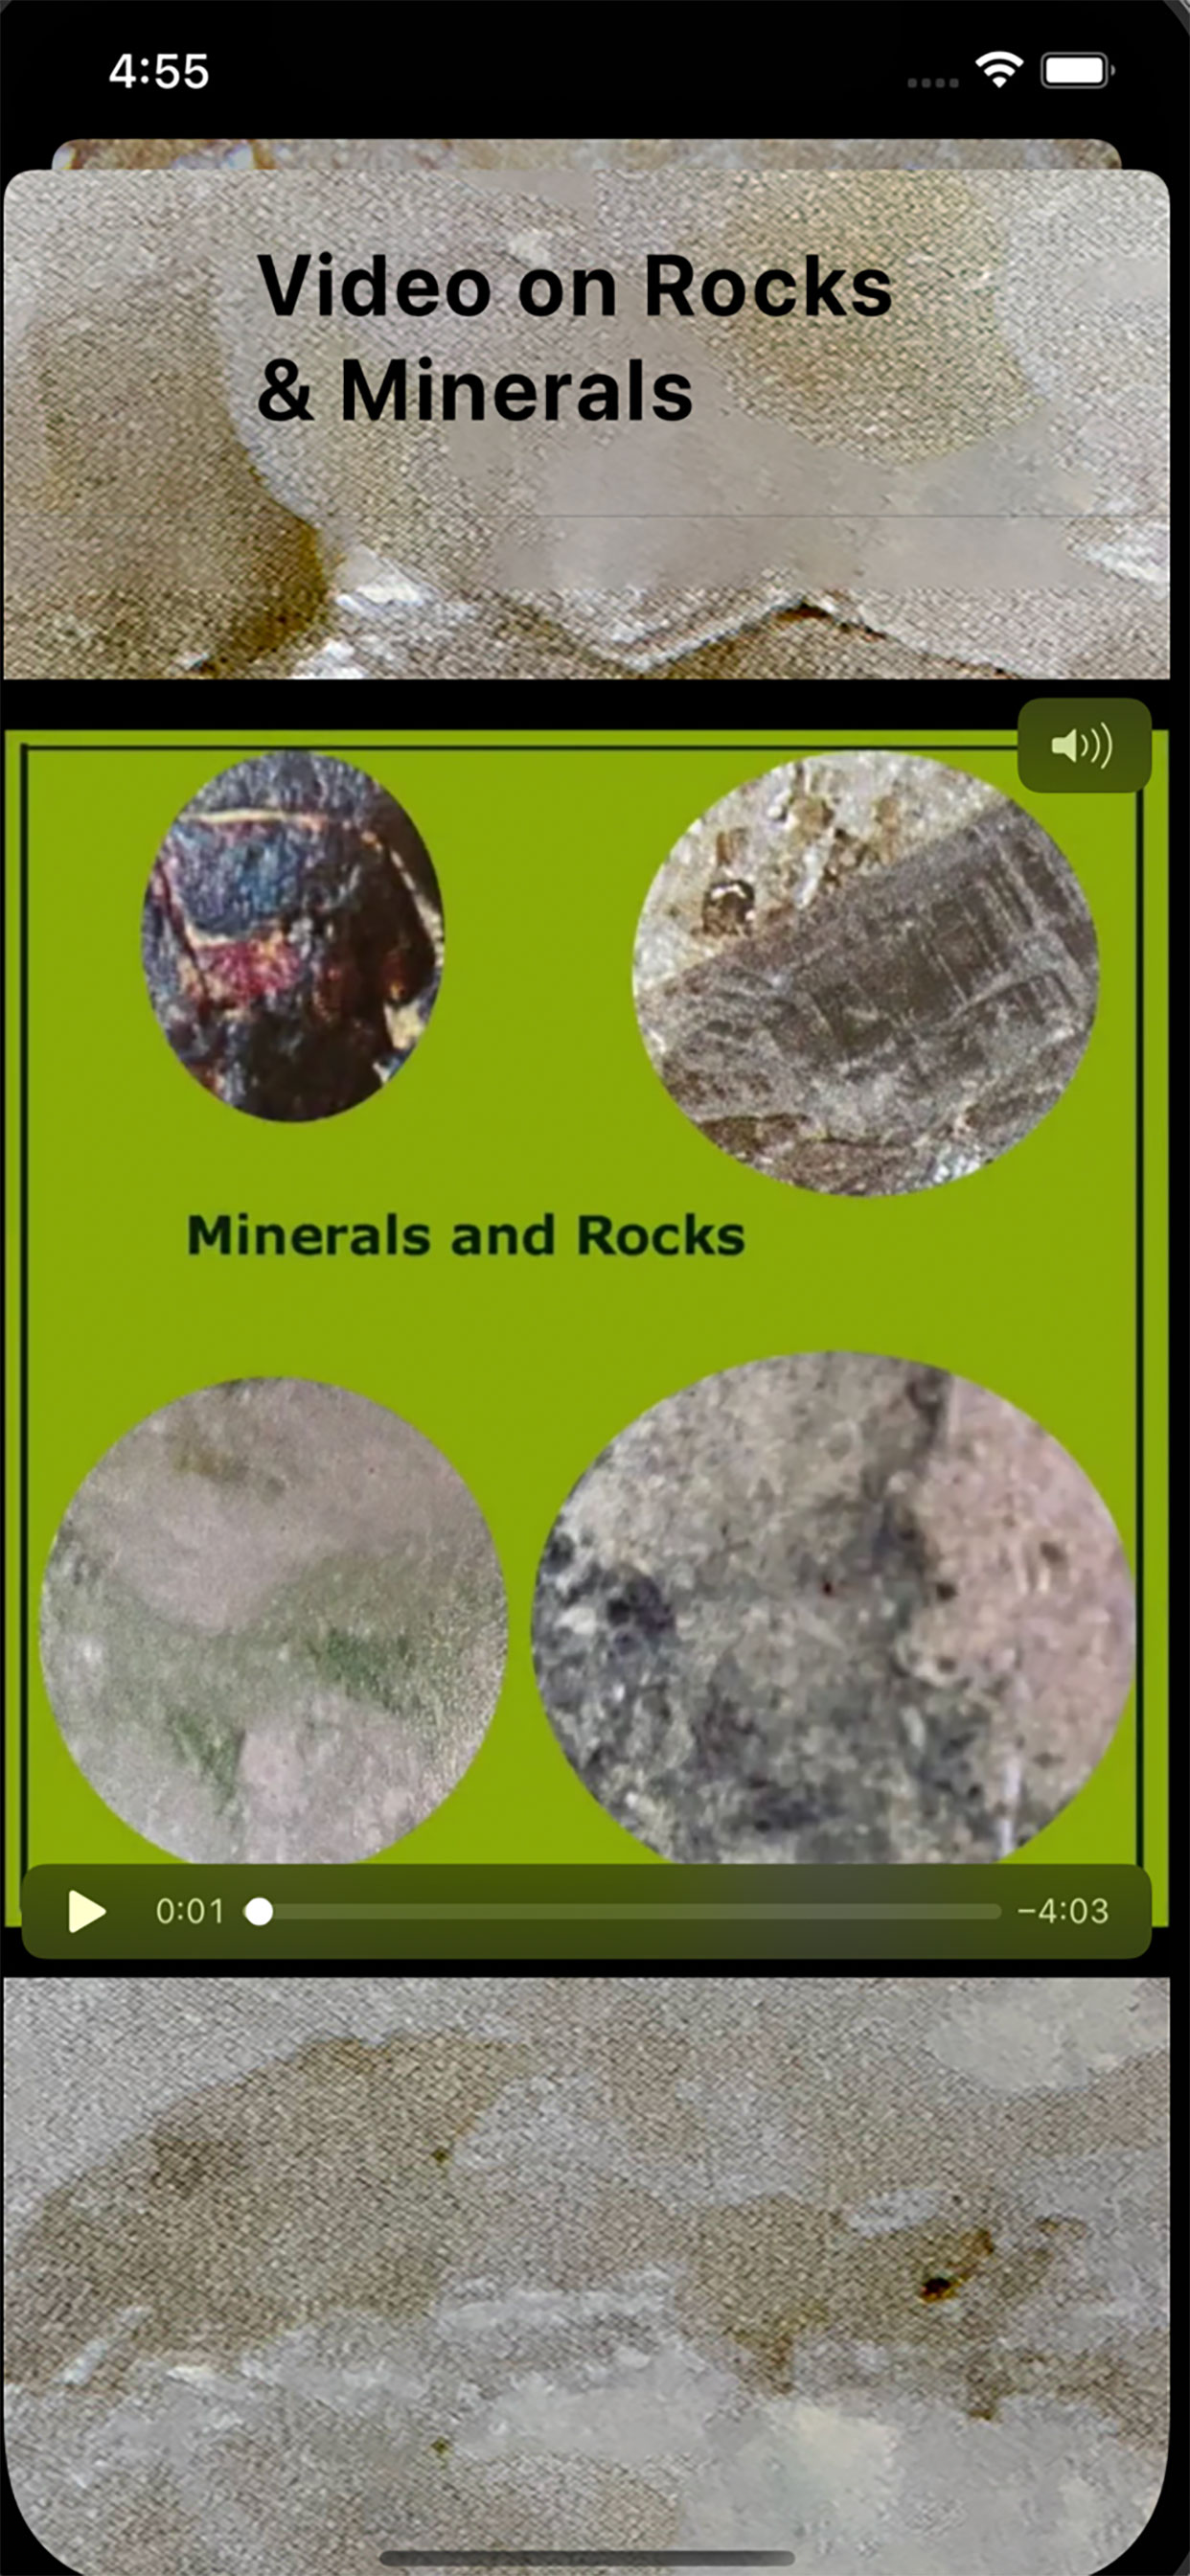 Minerals & Rocks